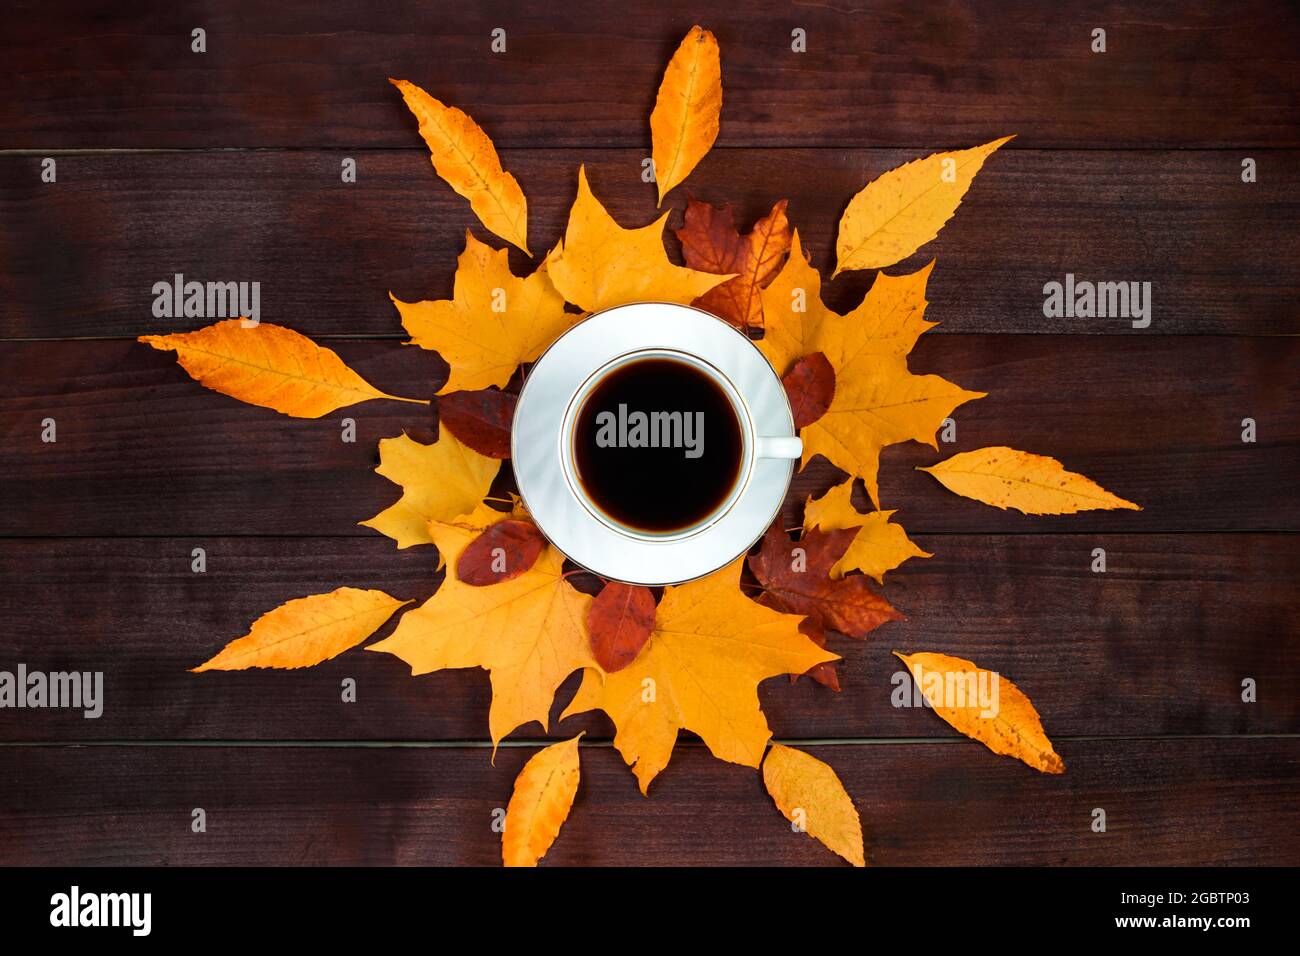 Tasse de café fort chaud et feuilles mortes sur fond de bois. Concept Hello Autumn. Boisson chaude par temps froid. Banque D'Images